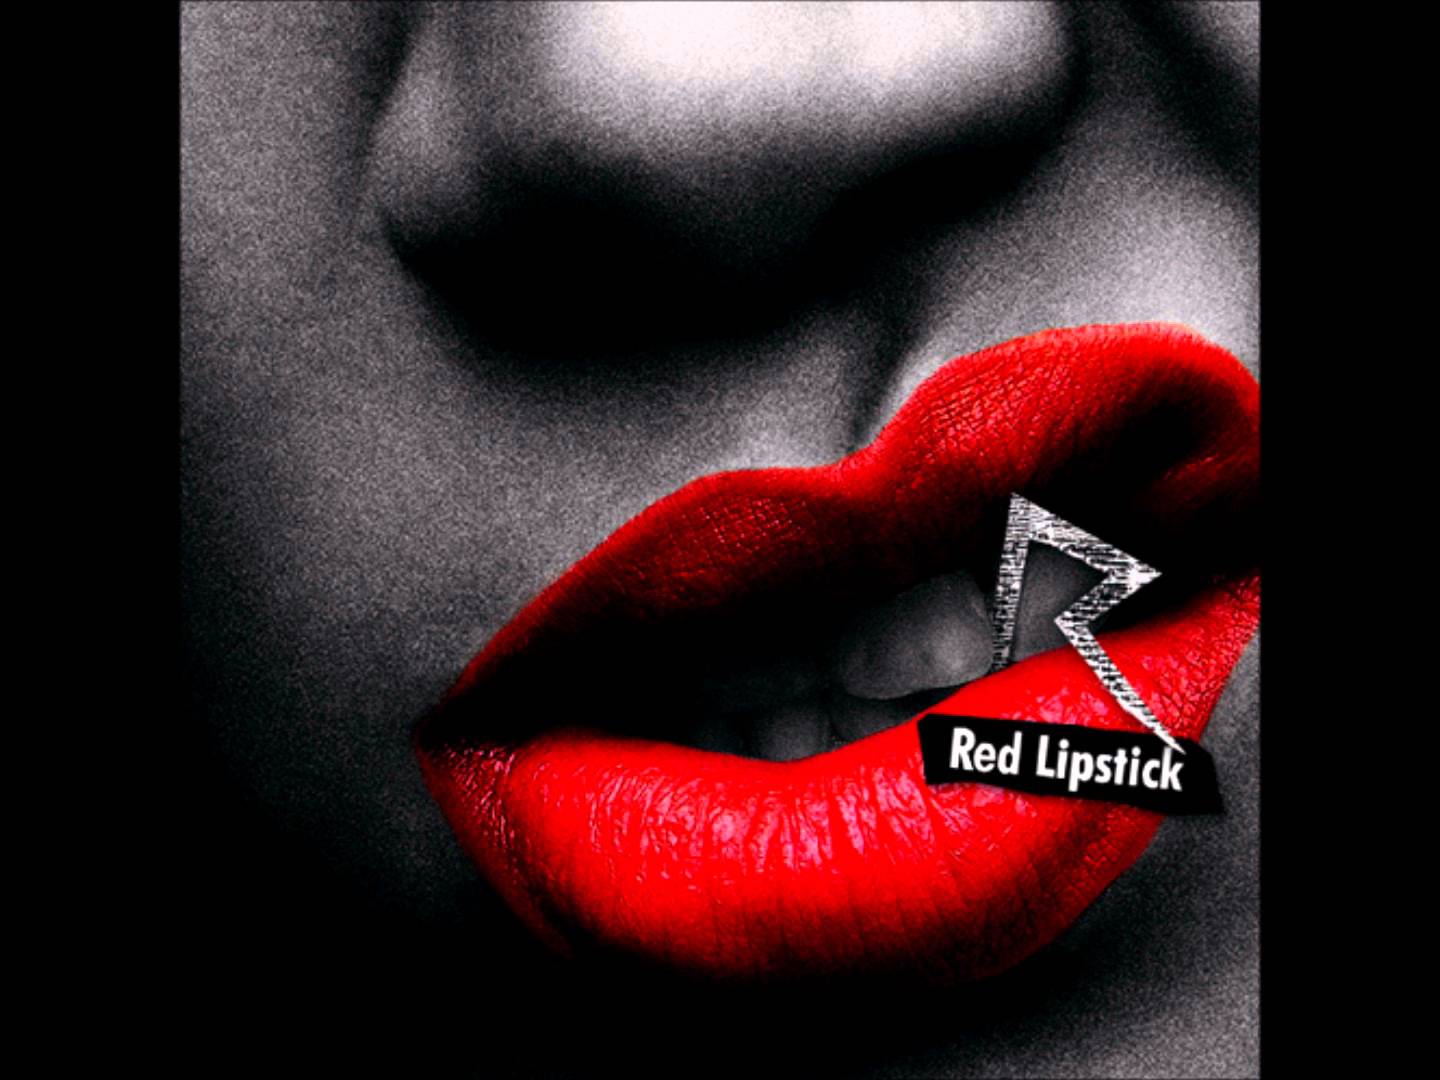 Песня губная помада. Red Lipstick Rihanna обложка. Red Lipstick Rihanna Cover. Рыжая Rihanna. Липстик текст.